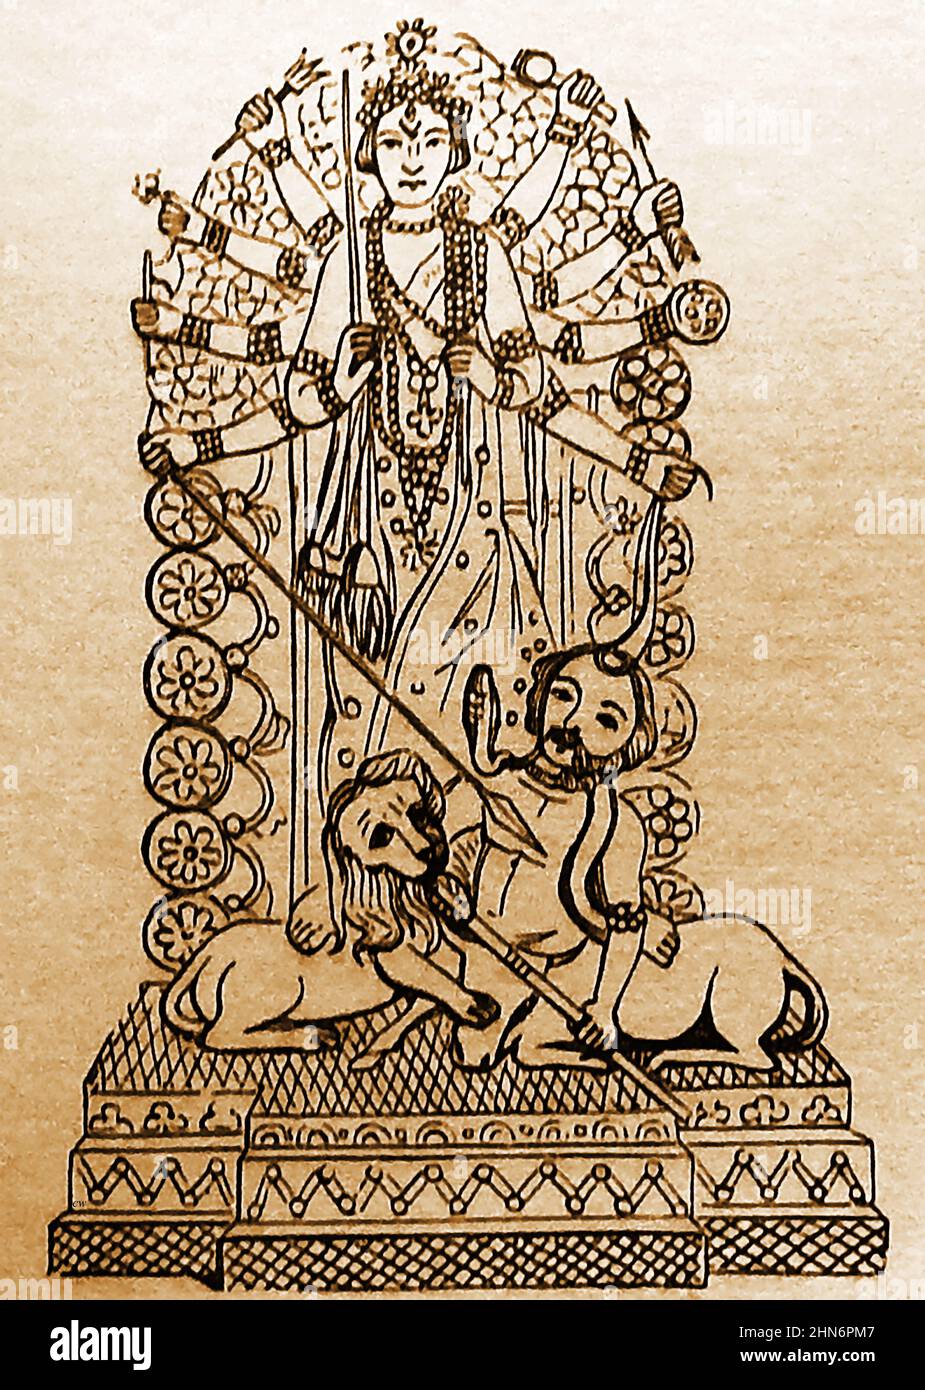 Une image de 19th siècle de la grande déité hindoue armée DURGA, l'un des consortiums de Siva. Elle est représentée en portant une lance dans le chef de Mahisha des démons. Il est intéressant de voir que dans cette représentation, Mahisha est sous la forme d'un européen avec son lion, ayant clairement une référence au Raj britannique en Inde. Un grand festival organisé chaque année en l'honneur de Durga s'appelle le Durga Puja. Banque D'Images